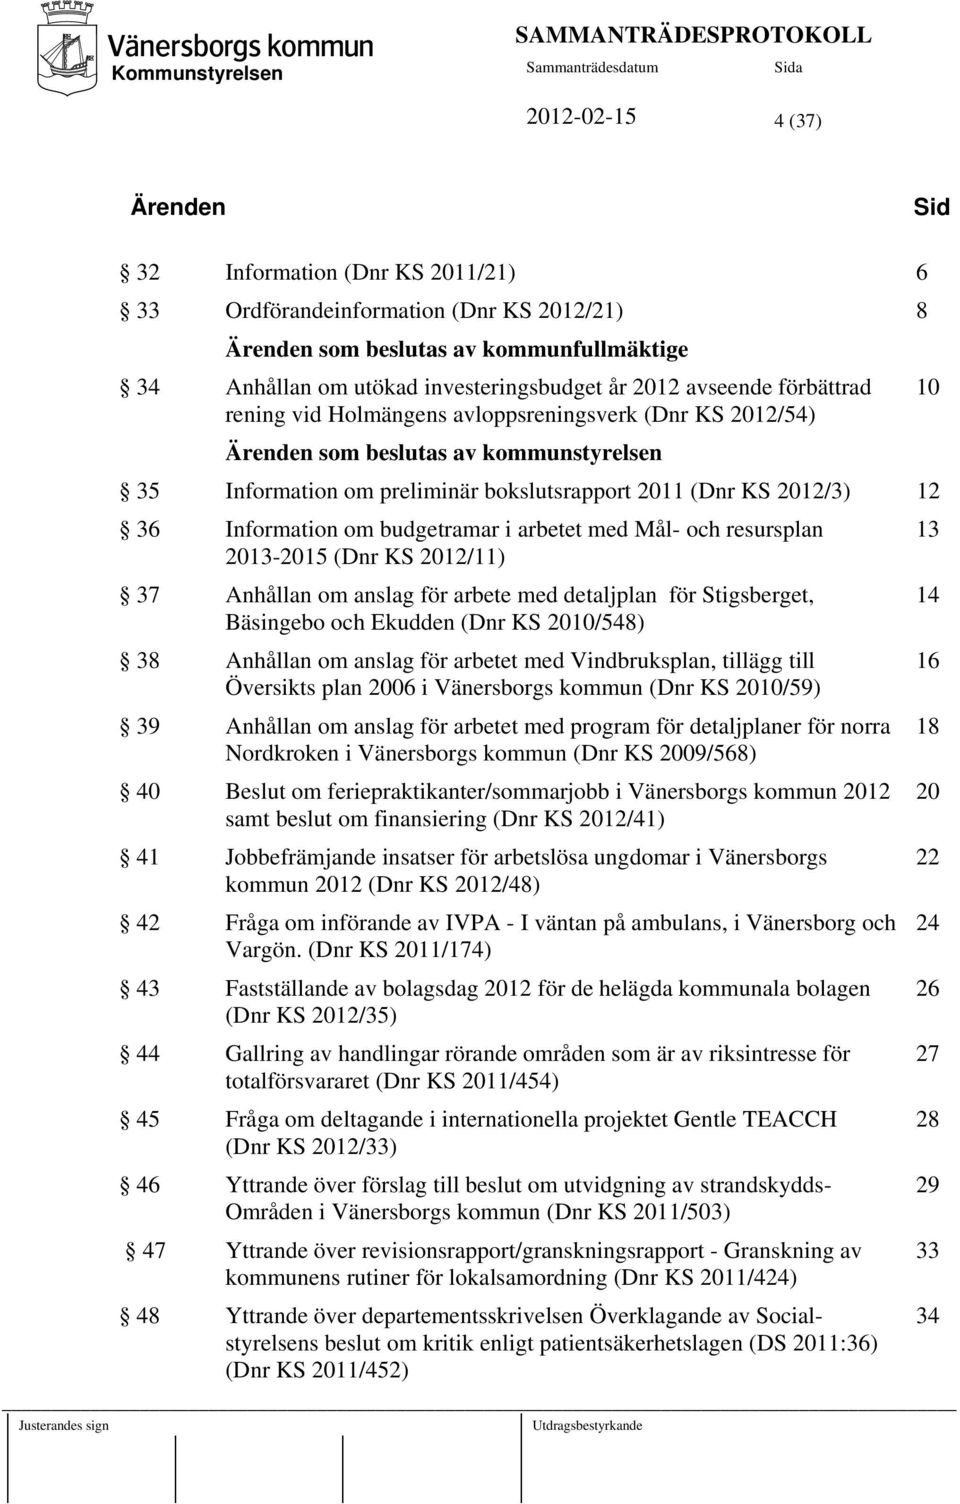 Information om budgetramar i arbetet med Mål- och resursplan 2013-2015 (Dnr KS 2012/11) 37 Anhållan om anslag för arbete med detaljplan för Stigsberget, Bäsingebo och Ekudden (Dnr KS 2010/548) 38